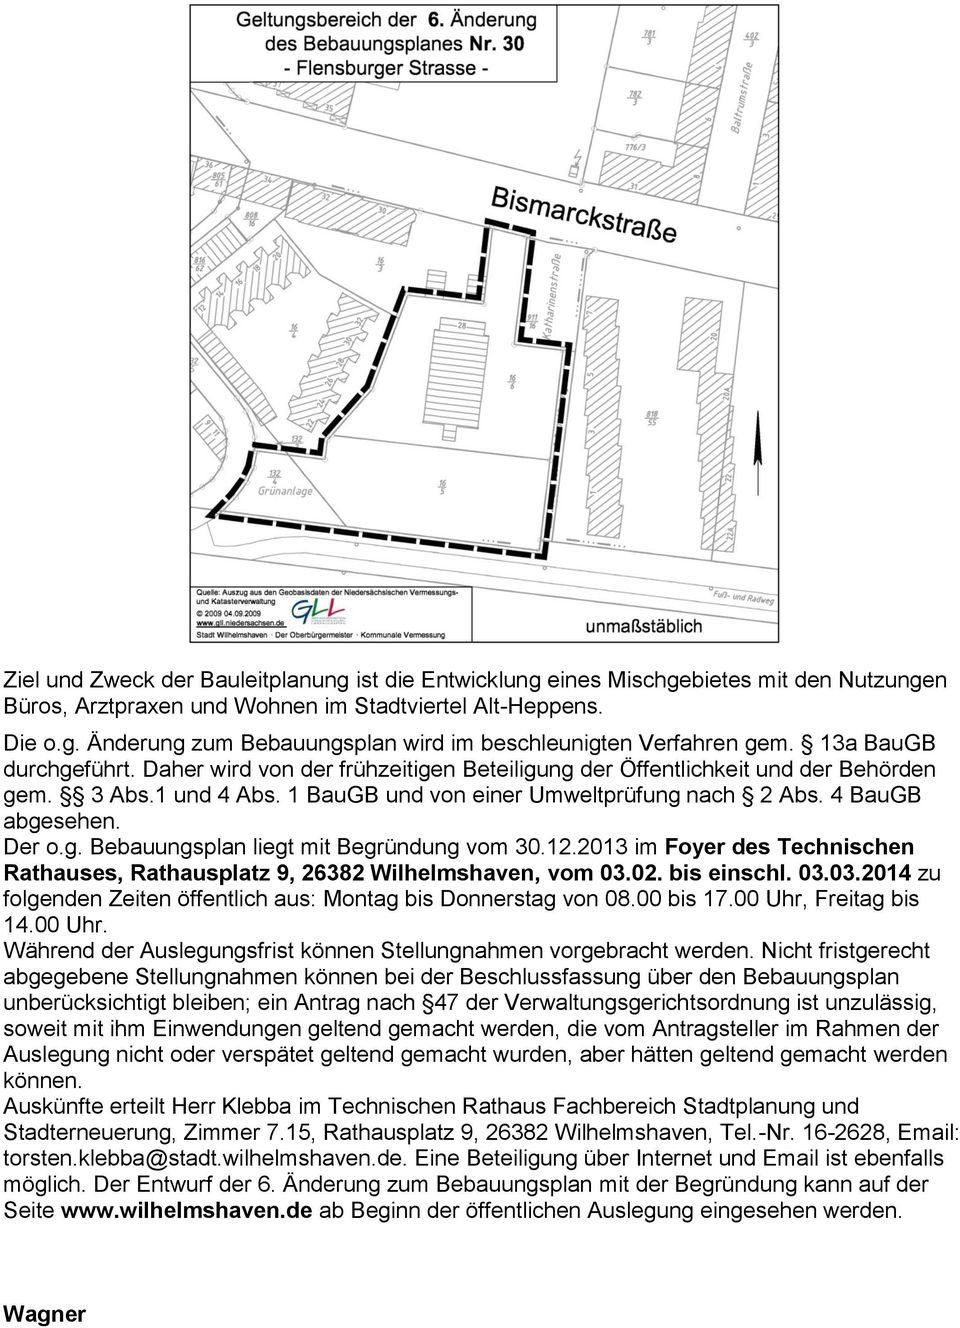 Der o.g. Bebauungsplan liegt mit Begründung vom 30.12.2013 im Foyer des Technischen Rathauses, Rathausplatz 9, 26382 Wilhelmshaven, vom 03.